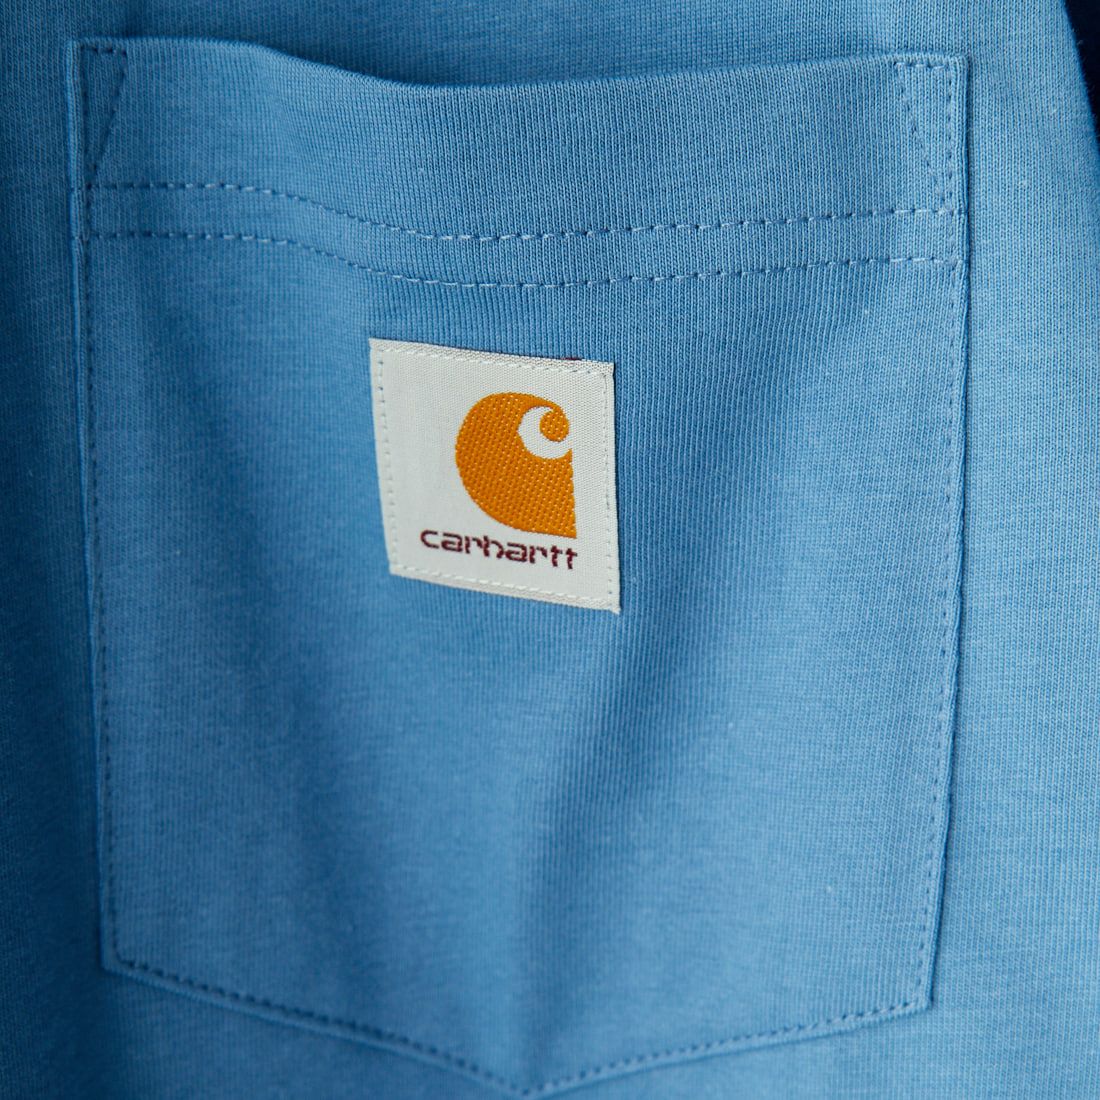 carhartt WIP [カーハートダブリューアイピー] ショートスリーブポケットTシャツ [I030434] SORRENT